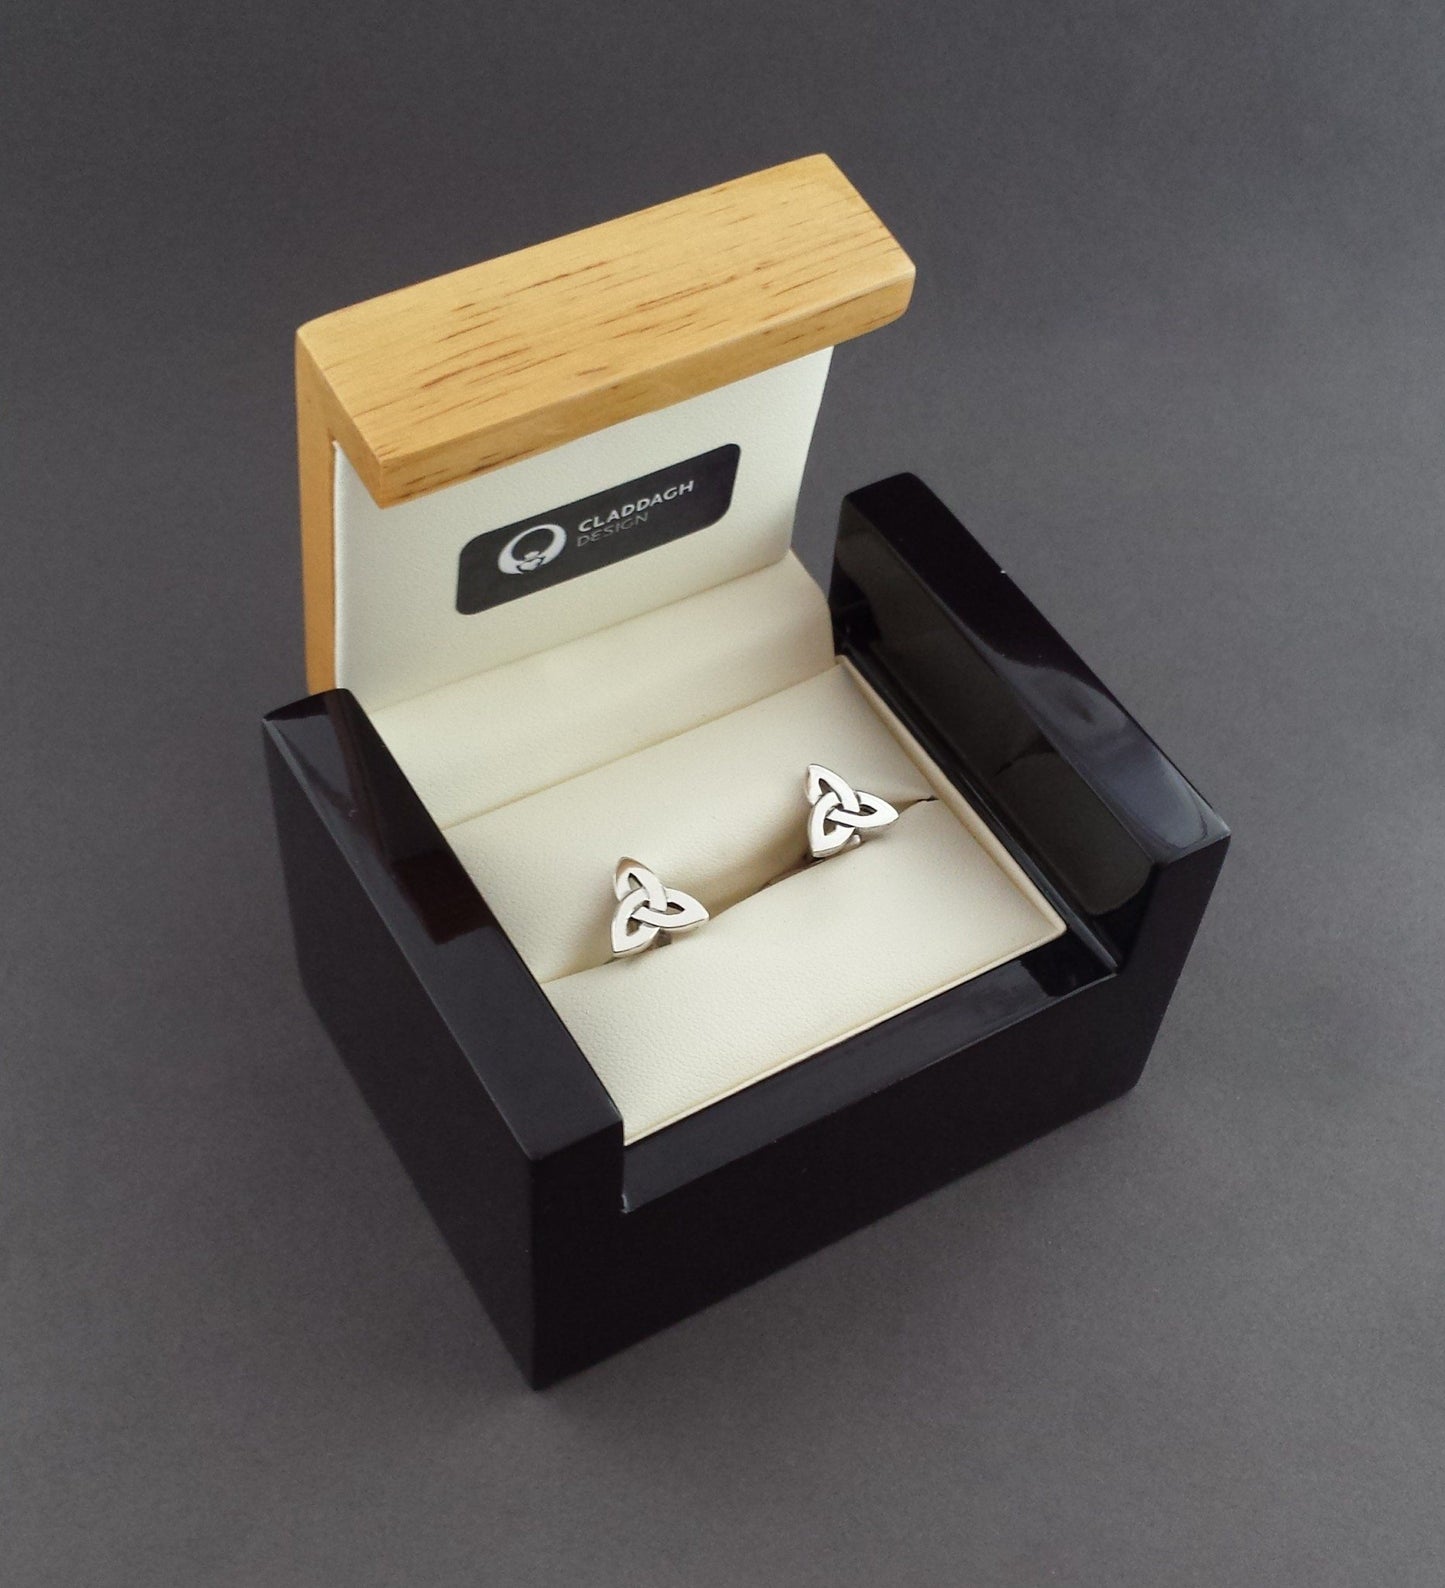 Silver Trinity Knot Cufflinks in a presentation box